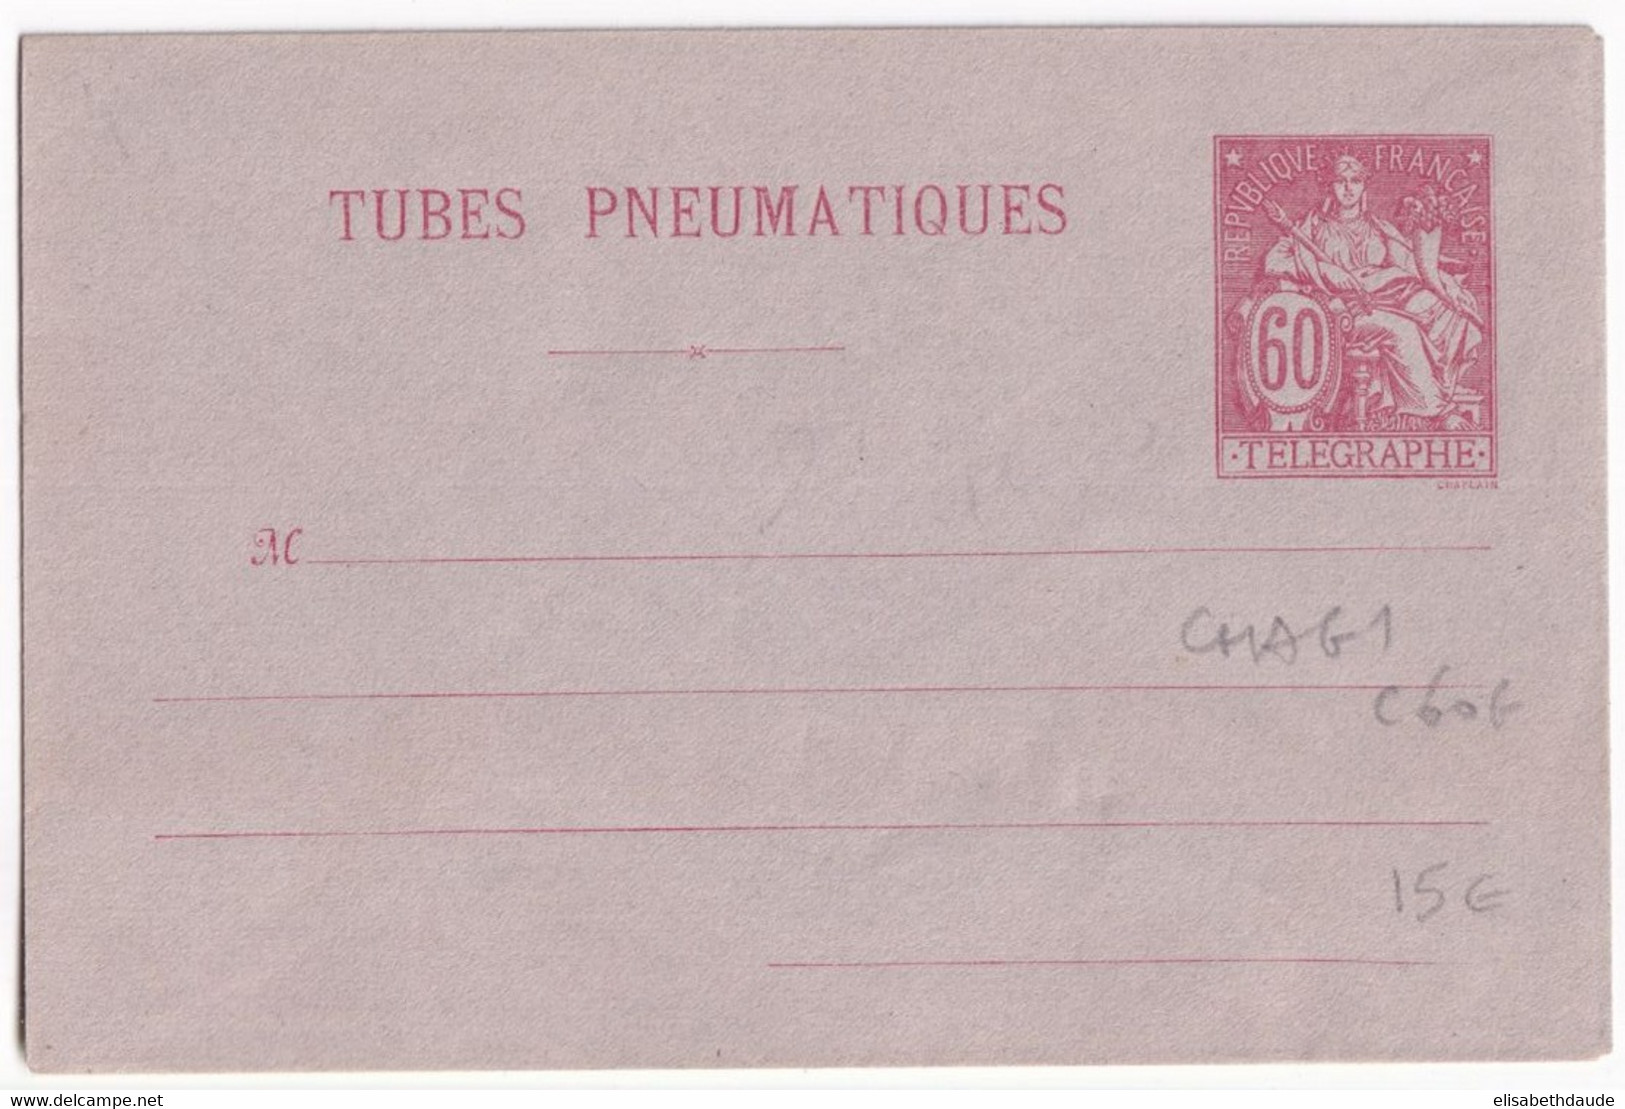 PNEUMATIQUE - 1889 - ENVELOPPE ENTIER POSTAL TYPE CHAPLAIN - STORCH G1 - NEUVE - COTE 2005 = 60 EUR. - Pneumatici